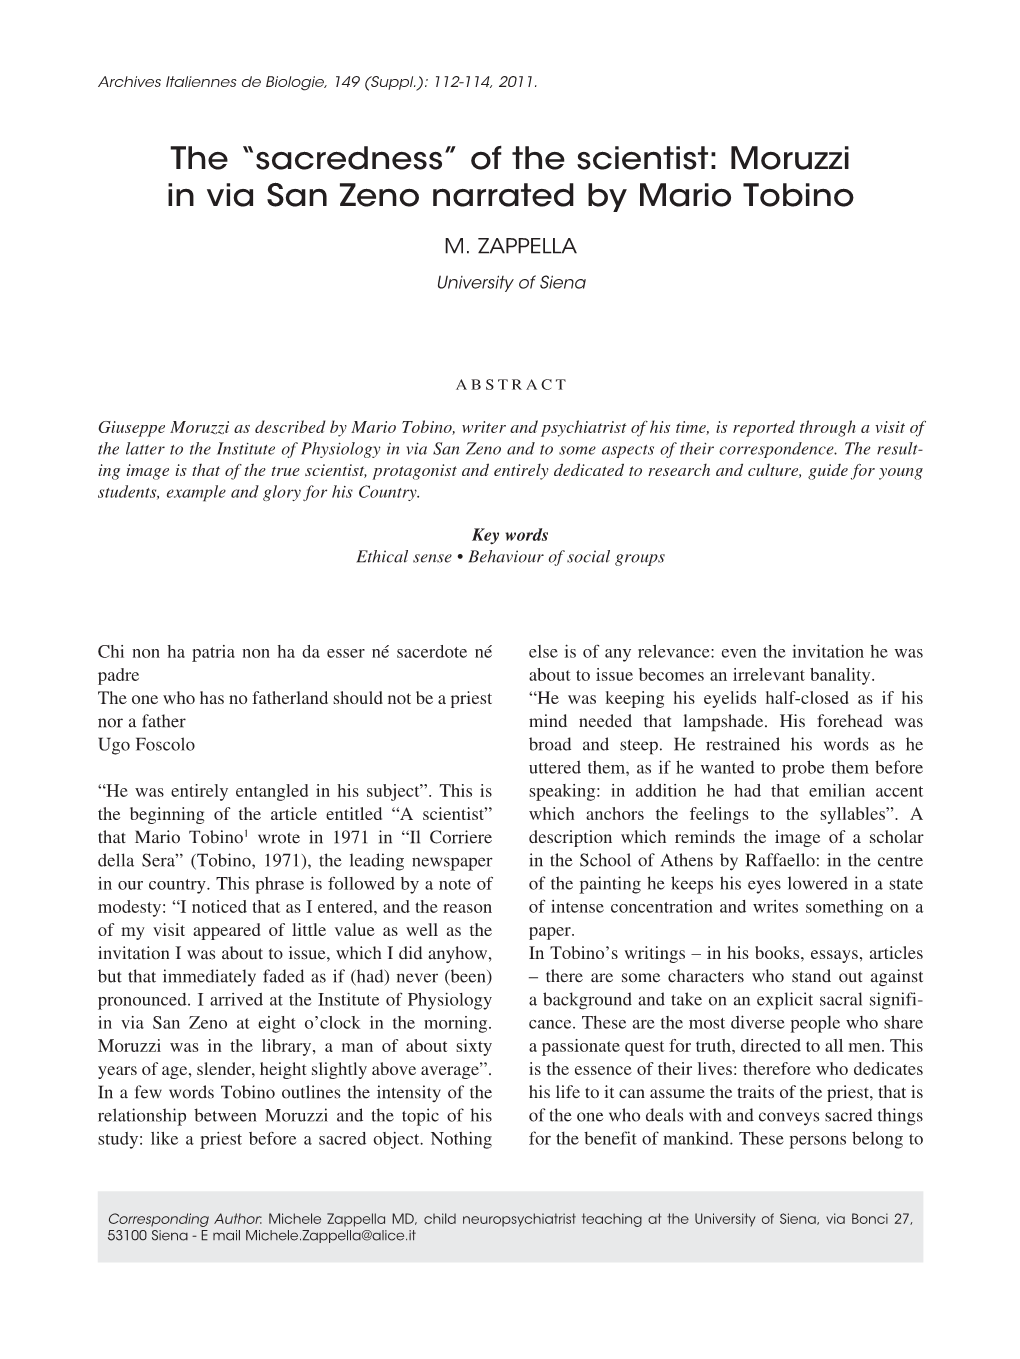 Of the Scientist: Moruzzi in Via San Zeno Narrated by Mario Tobino